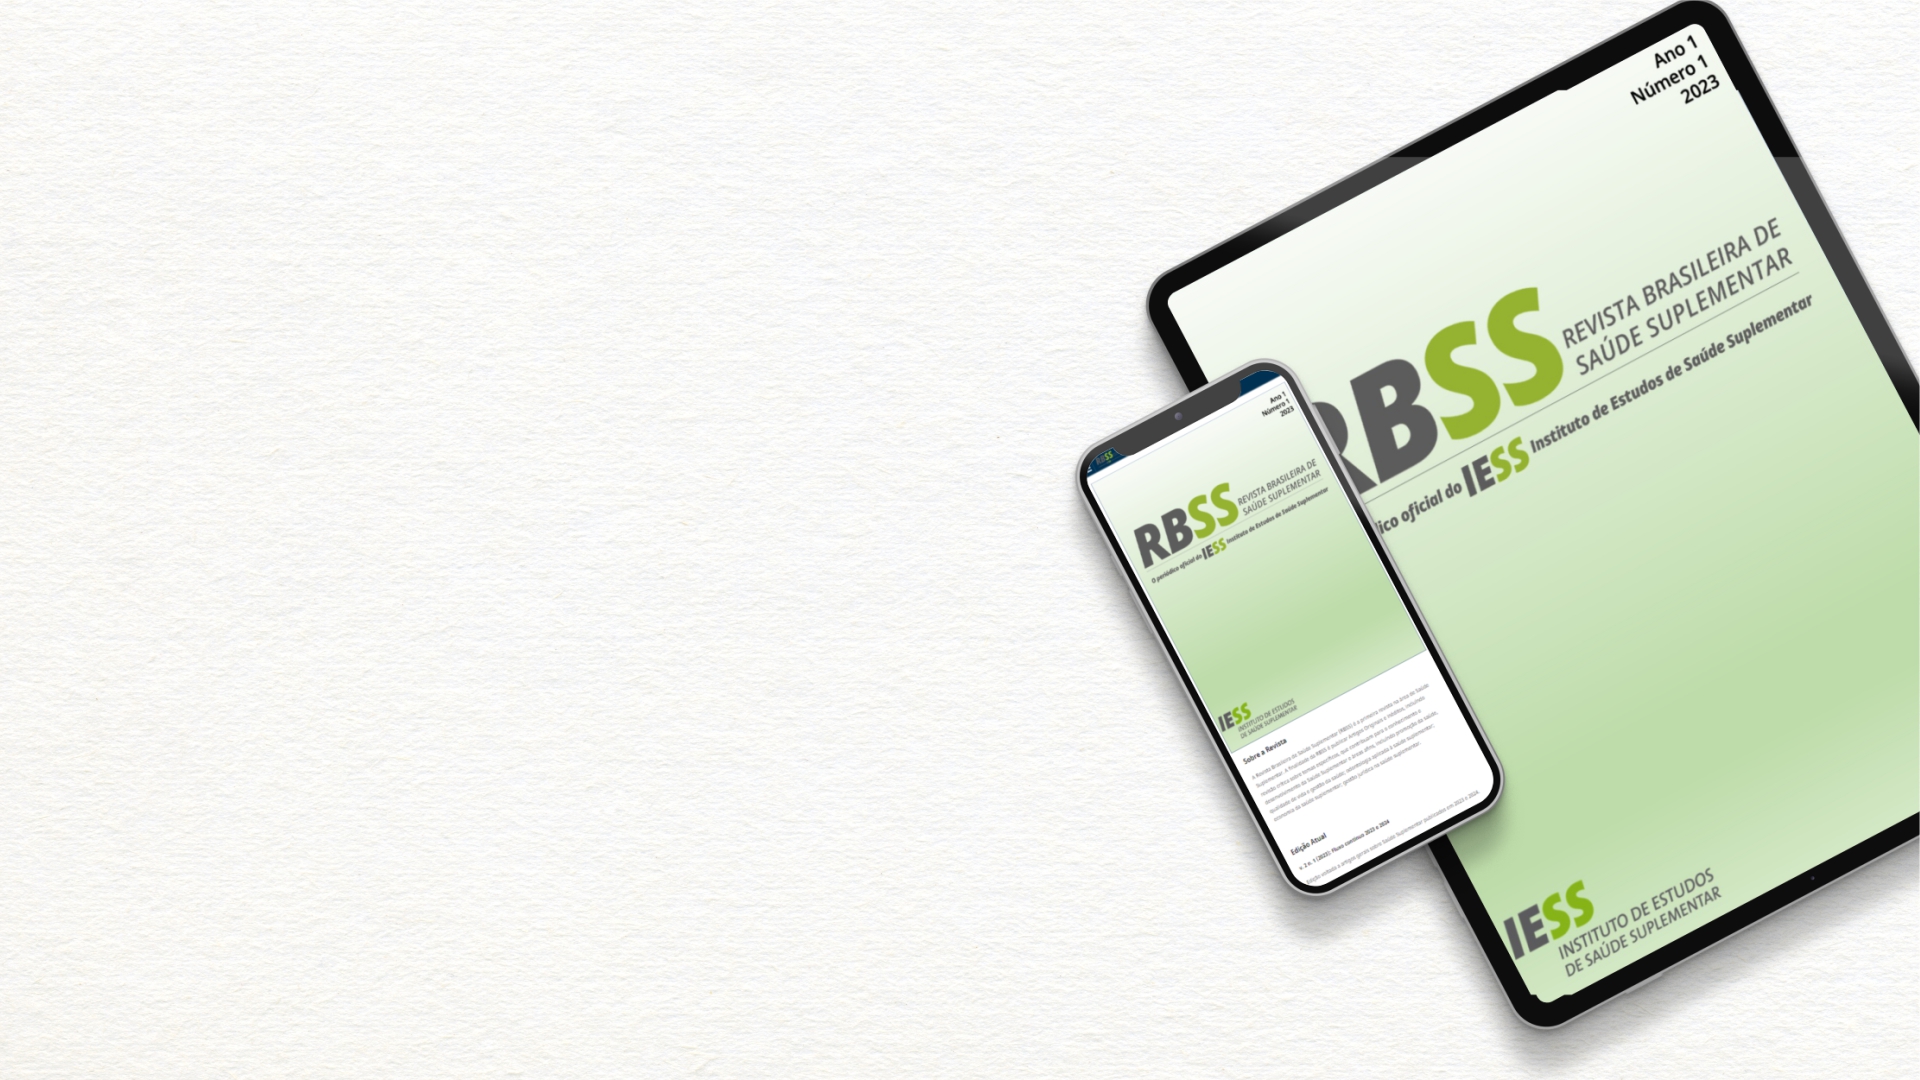 Envie seu artigo para publicação na Revista Brasileira de Saúde Suplementar (RBSS)